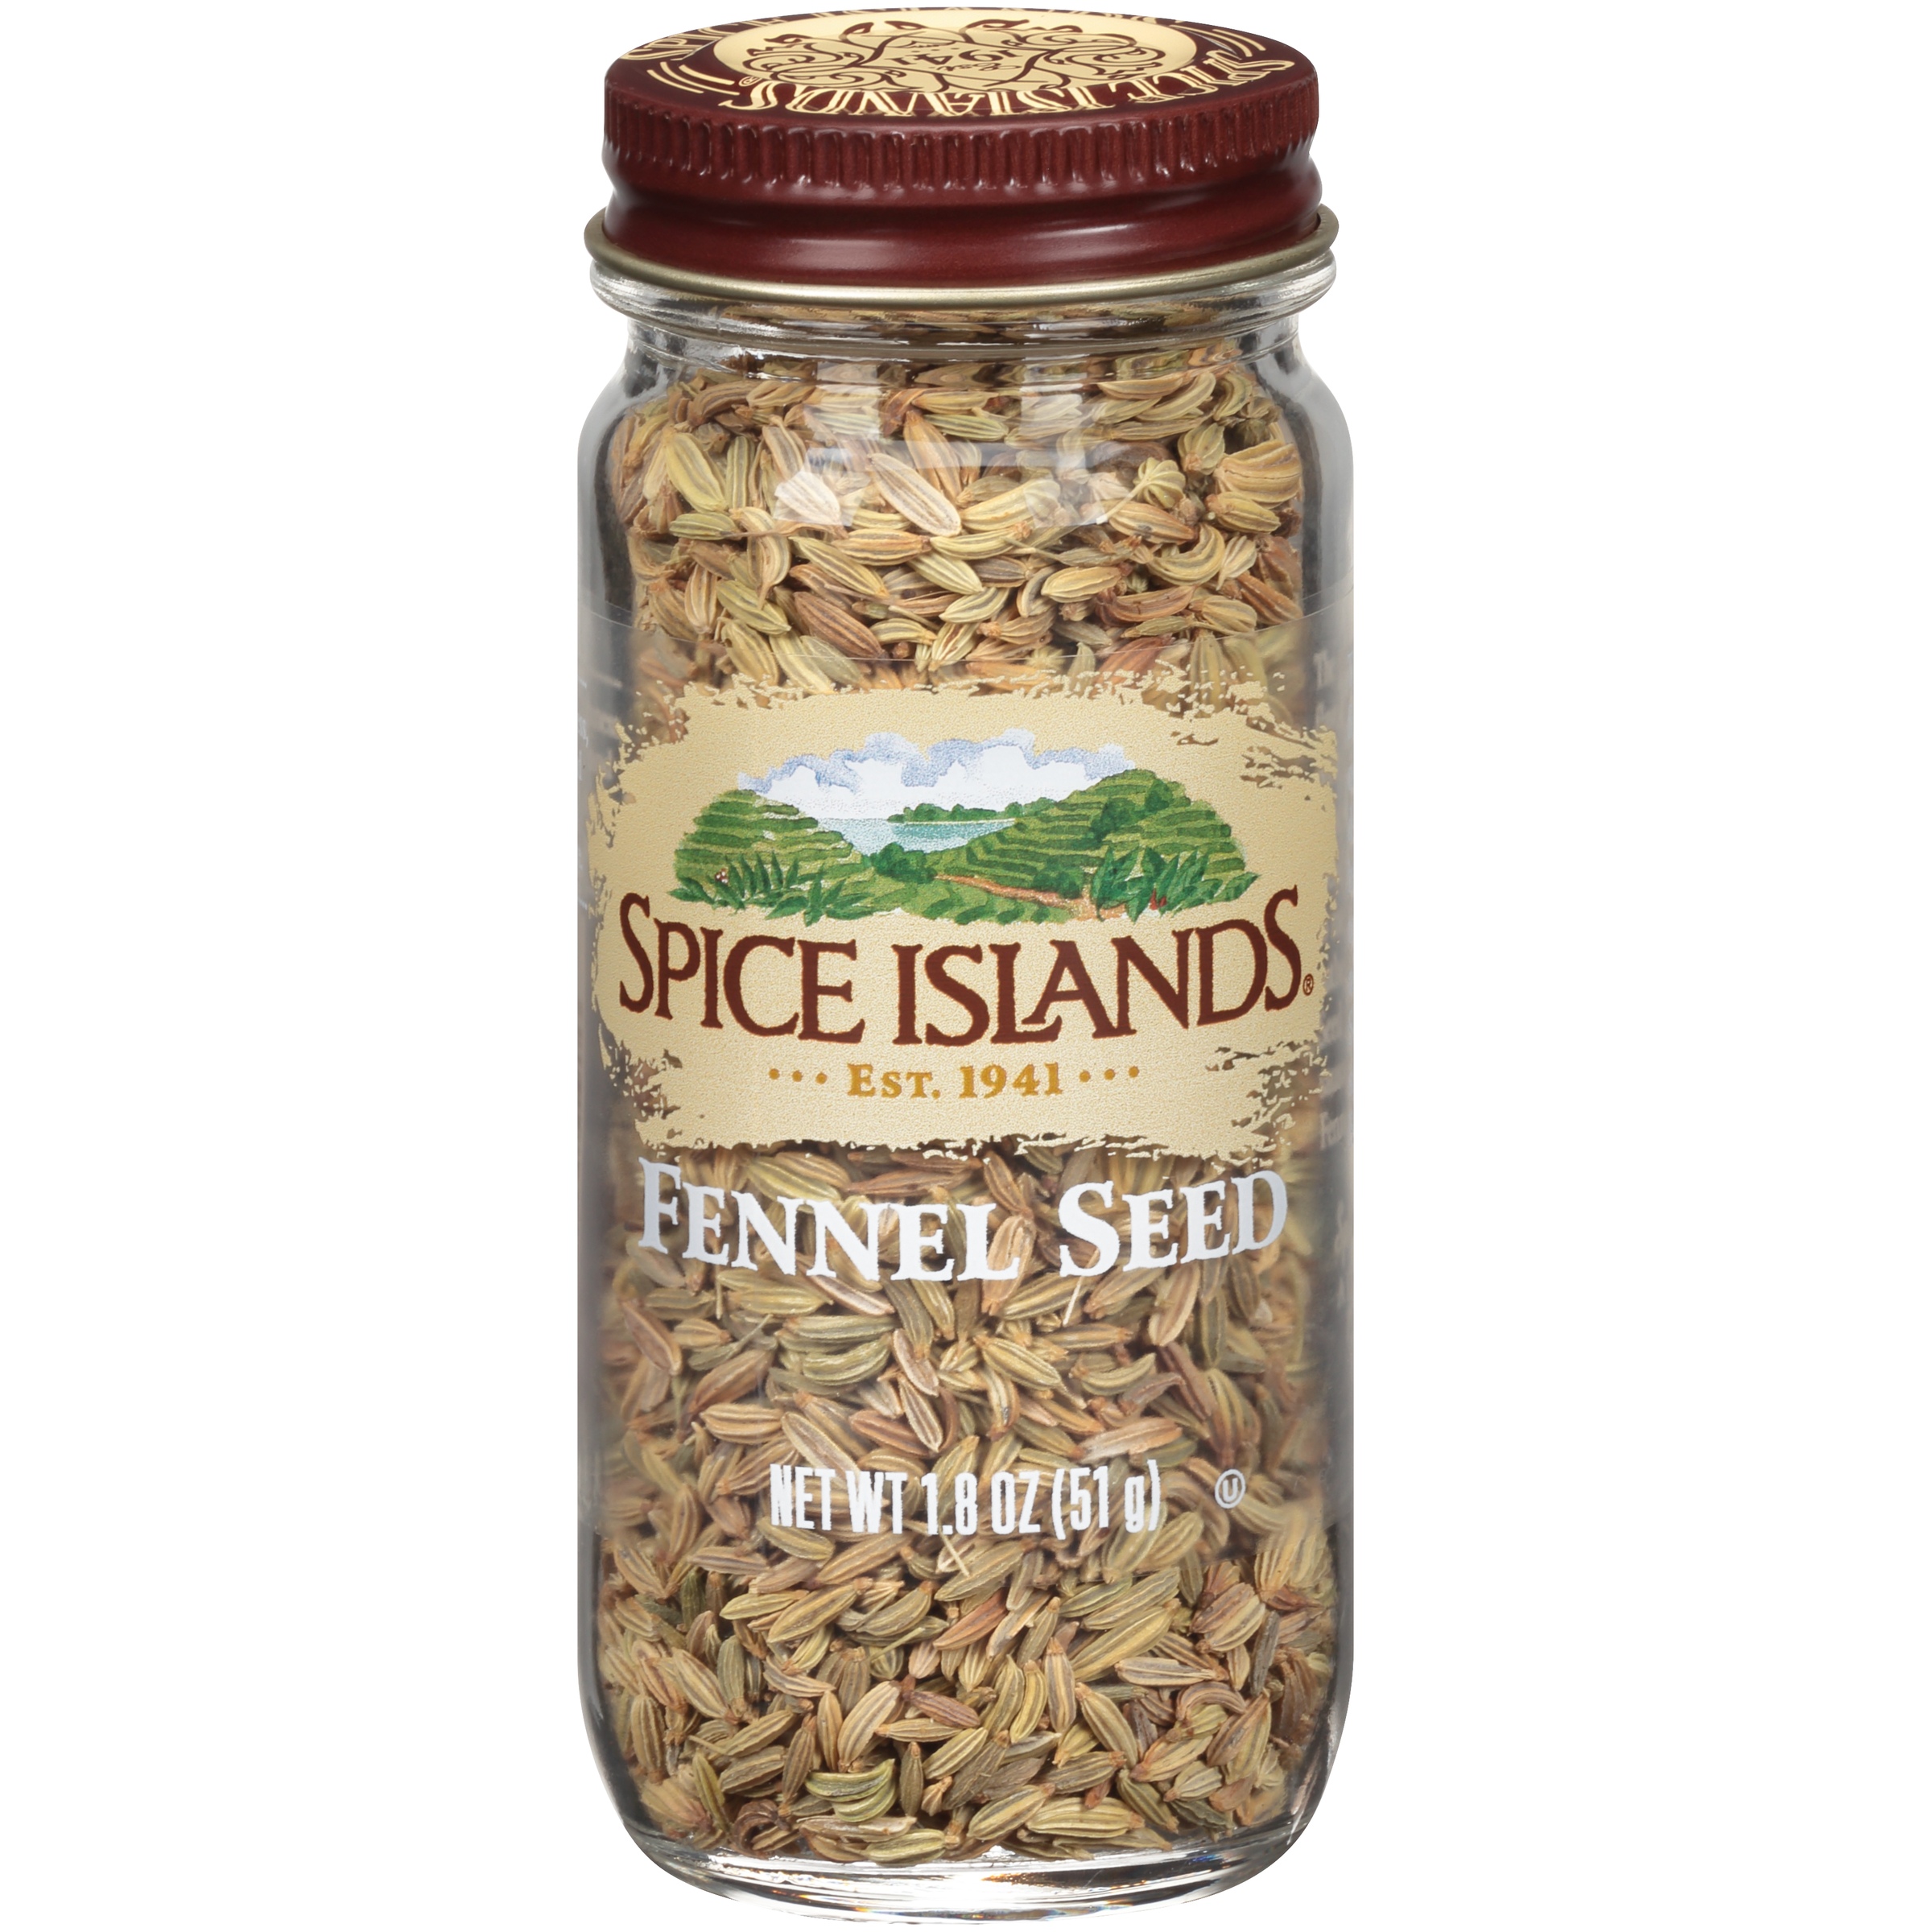 Fennel seeds walmart